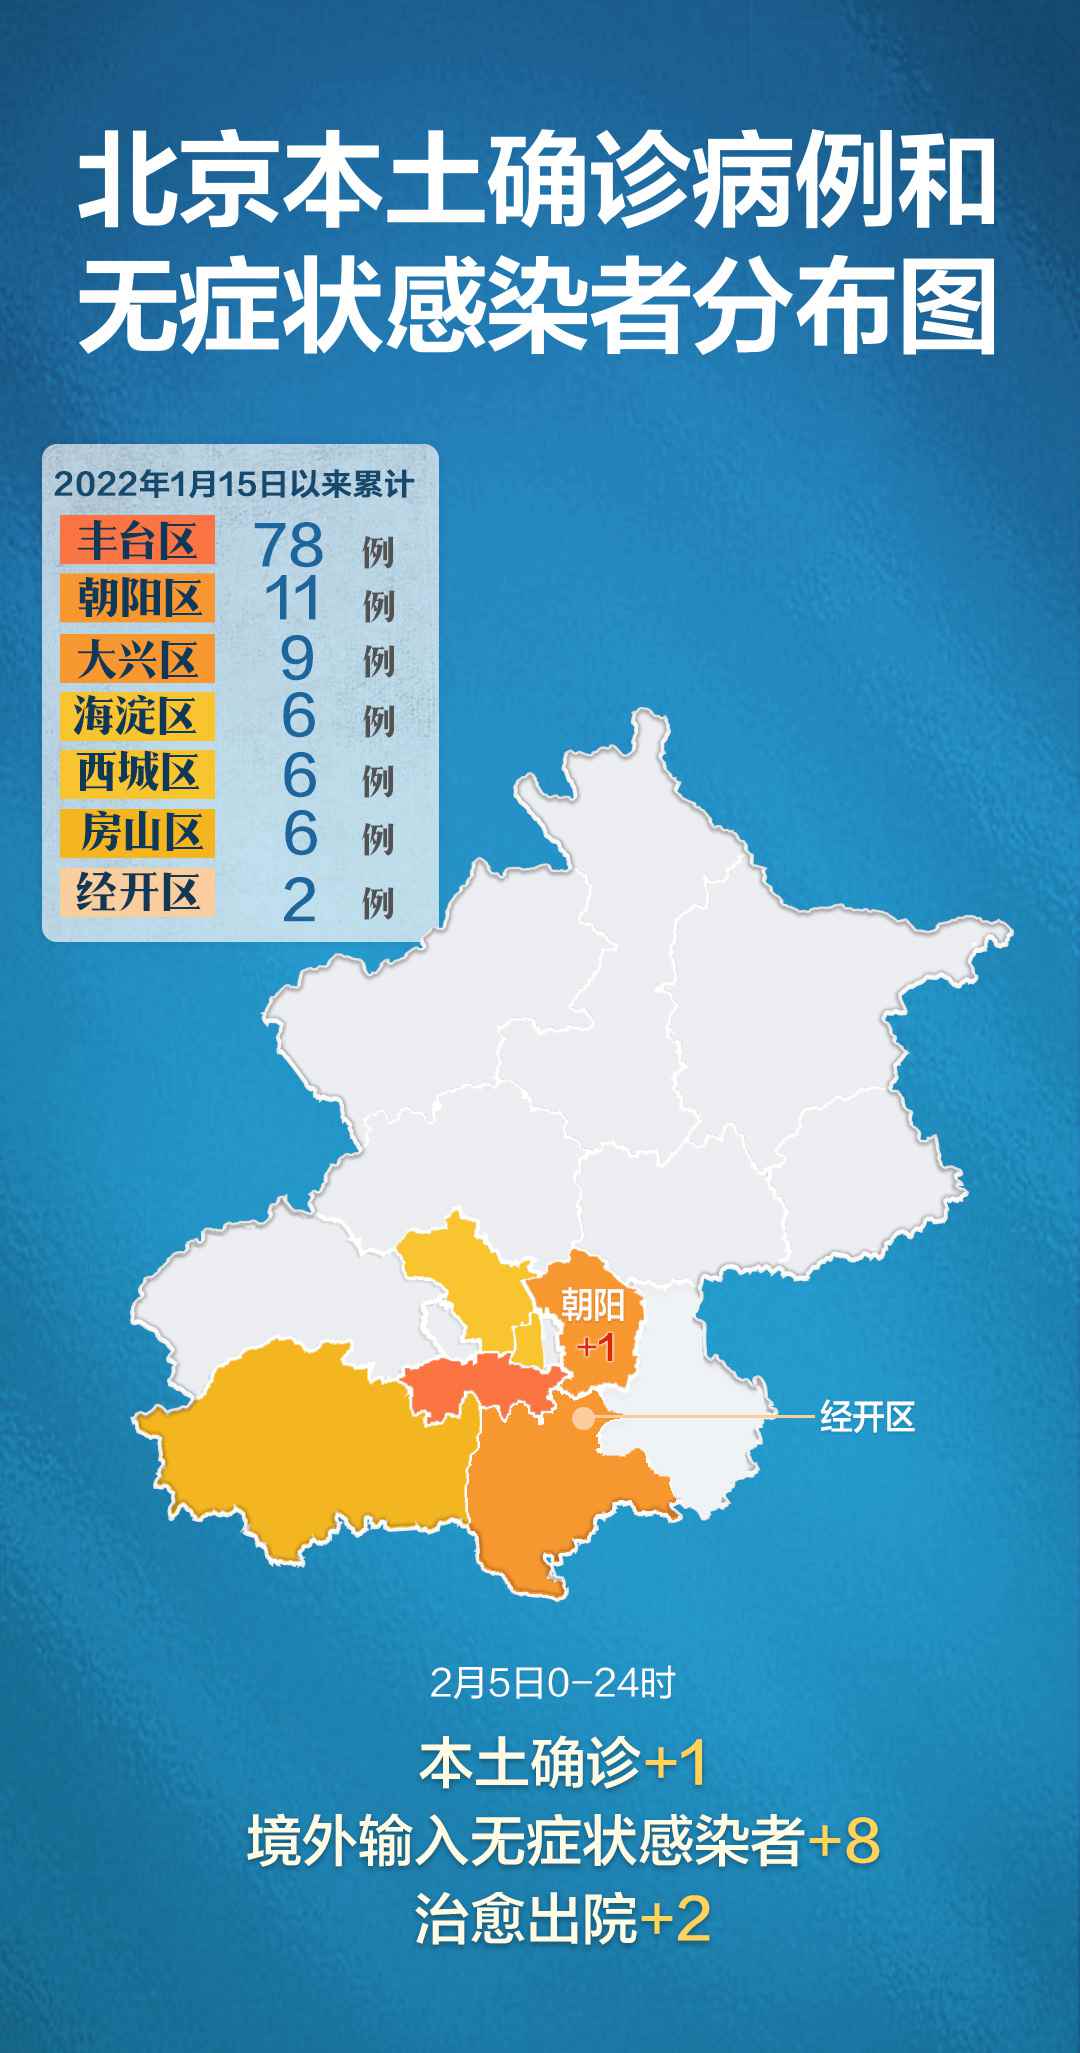 北京累计报告118例本土病例,分布丰台朝阳等多区,一图速览